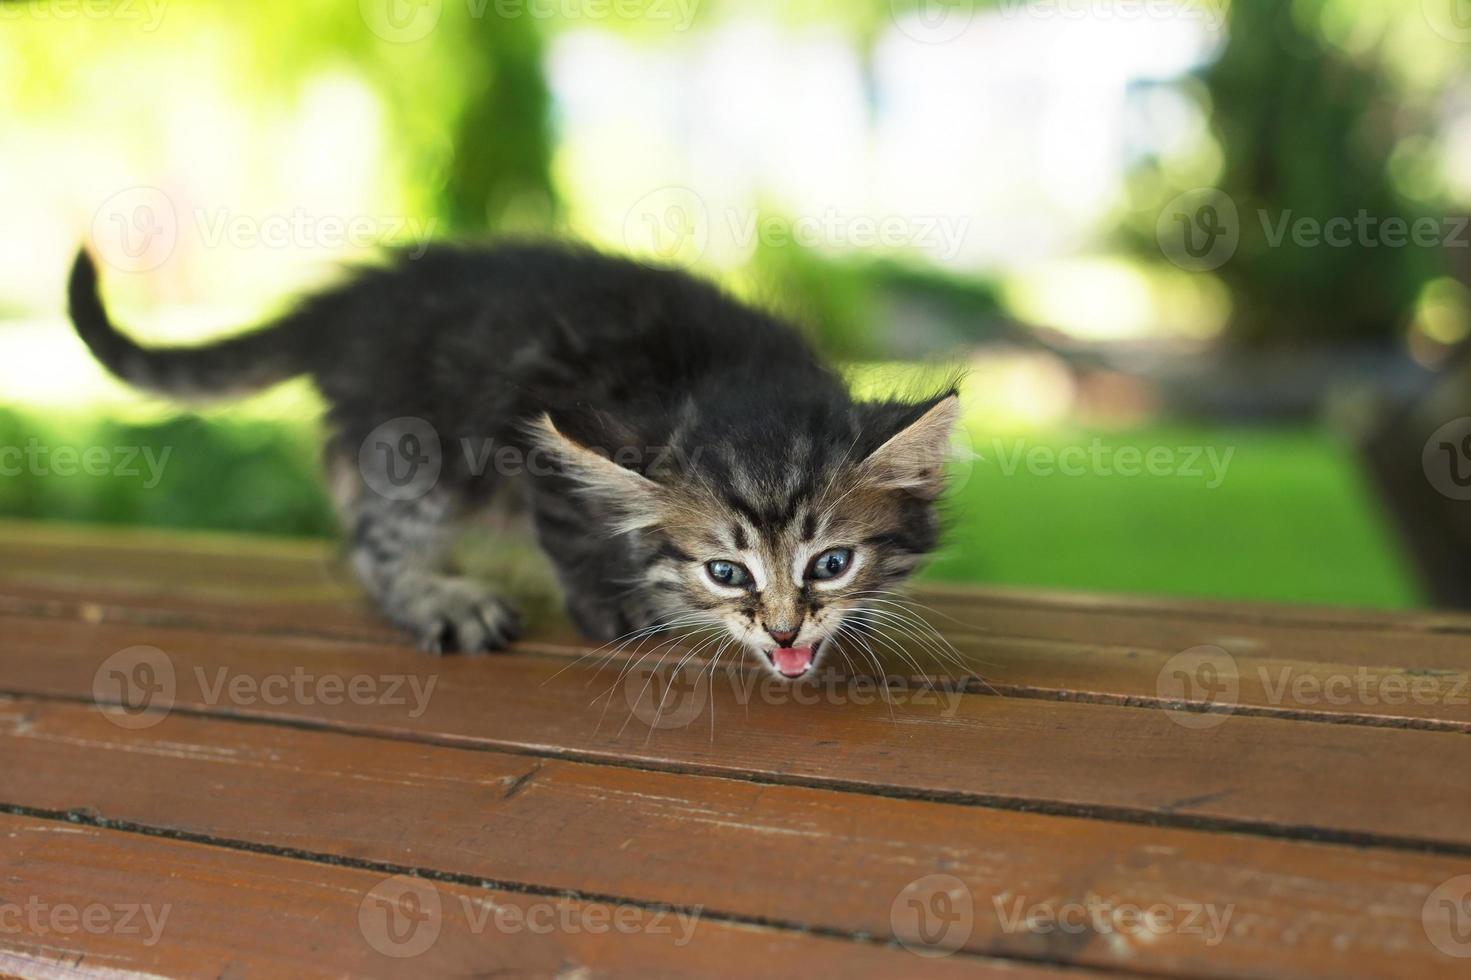 um gatinho perdido no parque em um banco, no verão foto